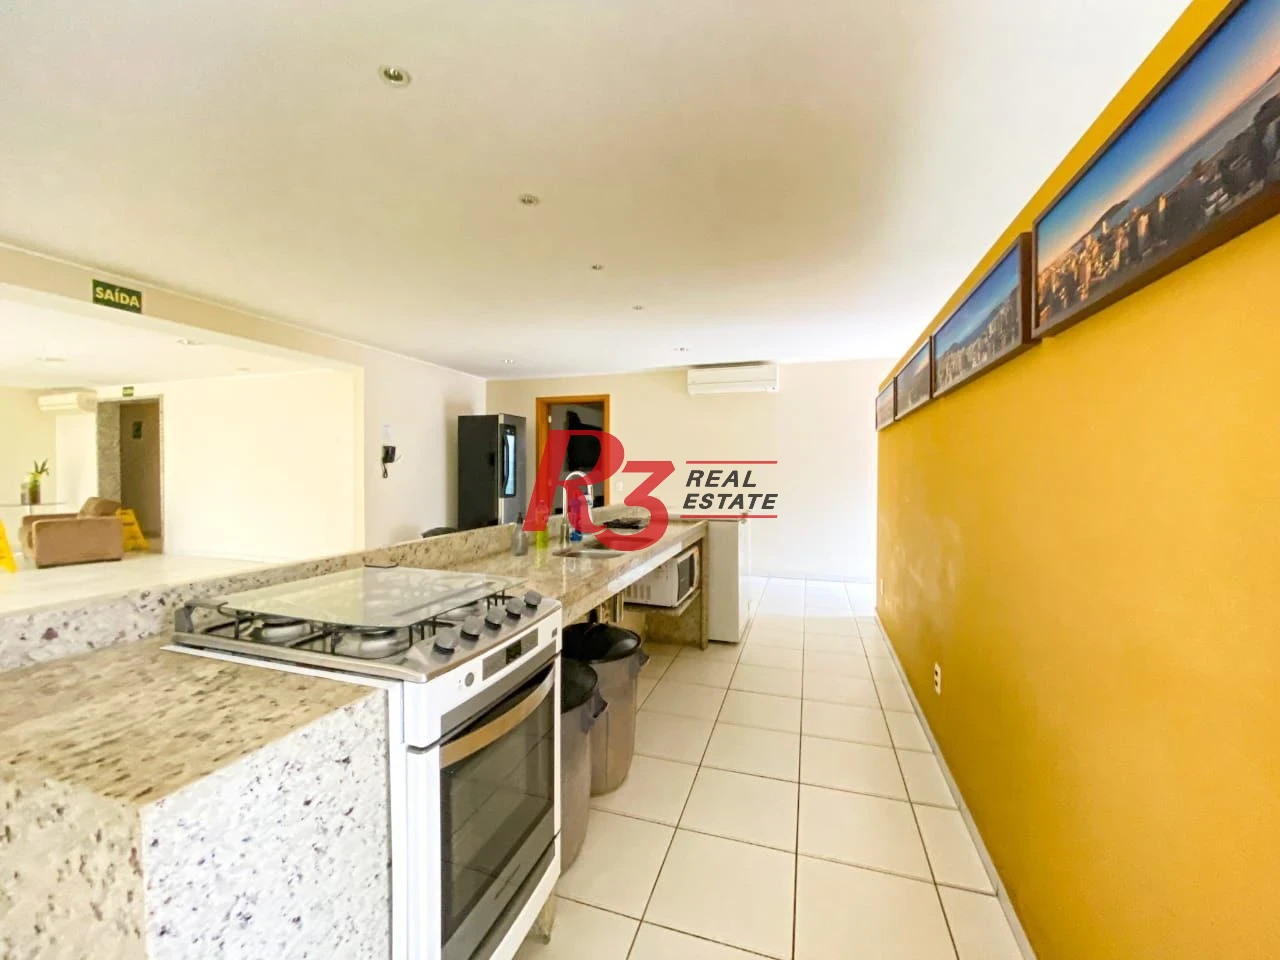 Apartamento com 2 dormitórios à venda, 97 m² por R$ 1.350.000,00 - Gonzaga - Santos/SP